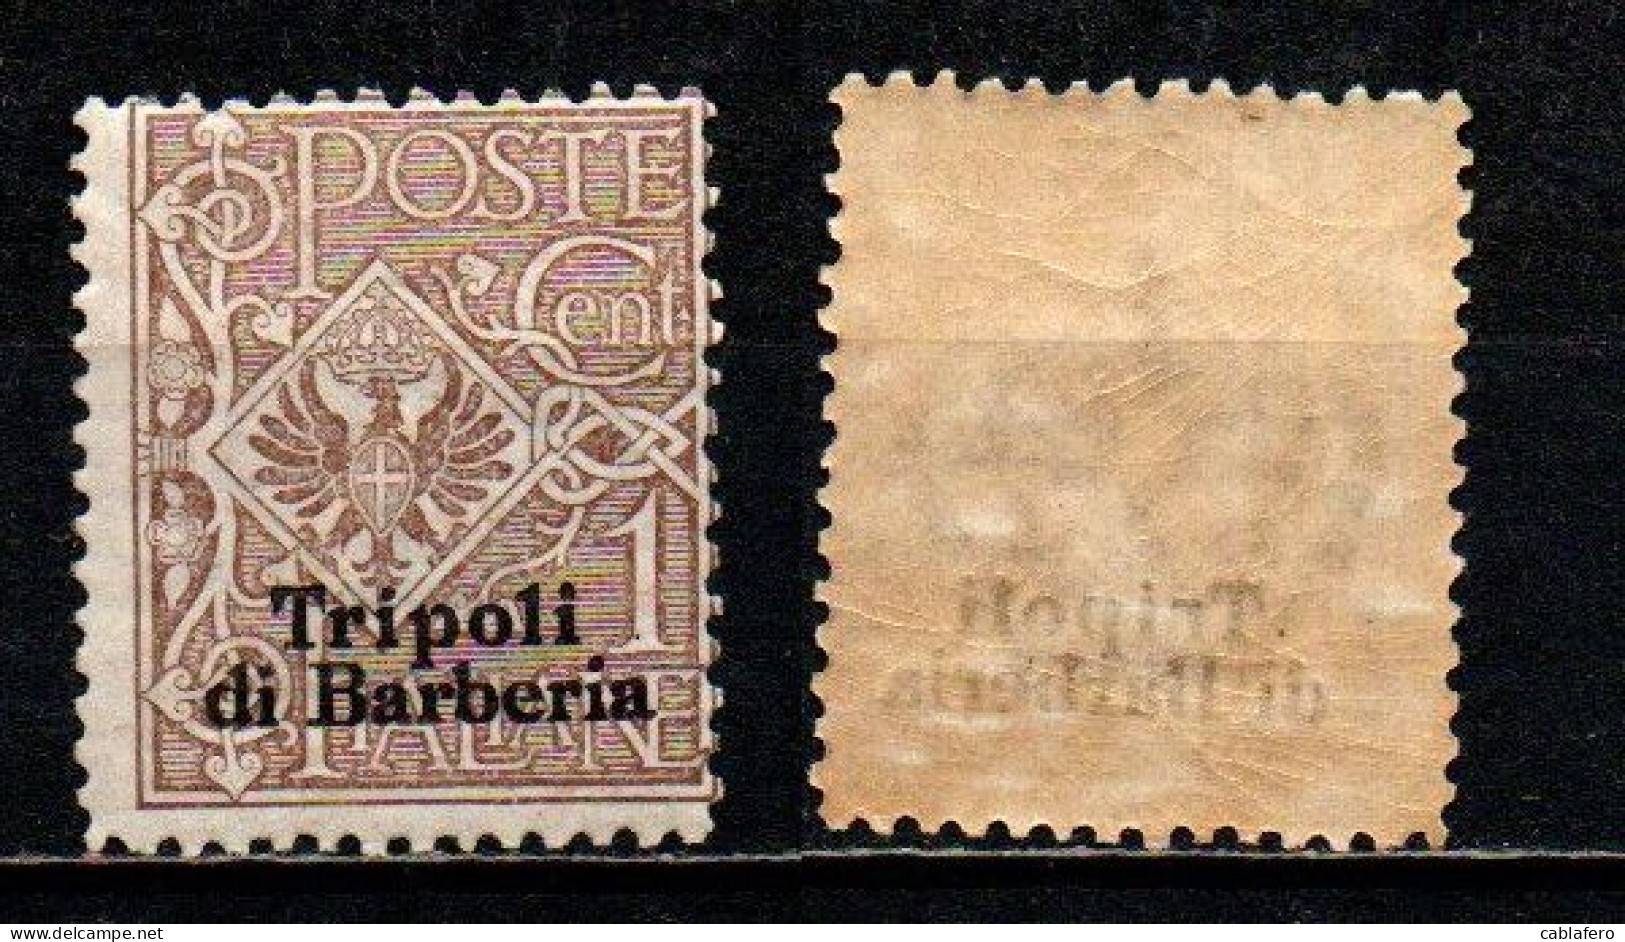 ITALIA REGNO - UFFICI ALL'ESTERO - TRIPOLI DI BARBERIA - 1909 - 1 C. - MNH - Amtliche Ausgaben